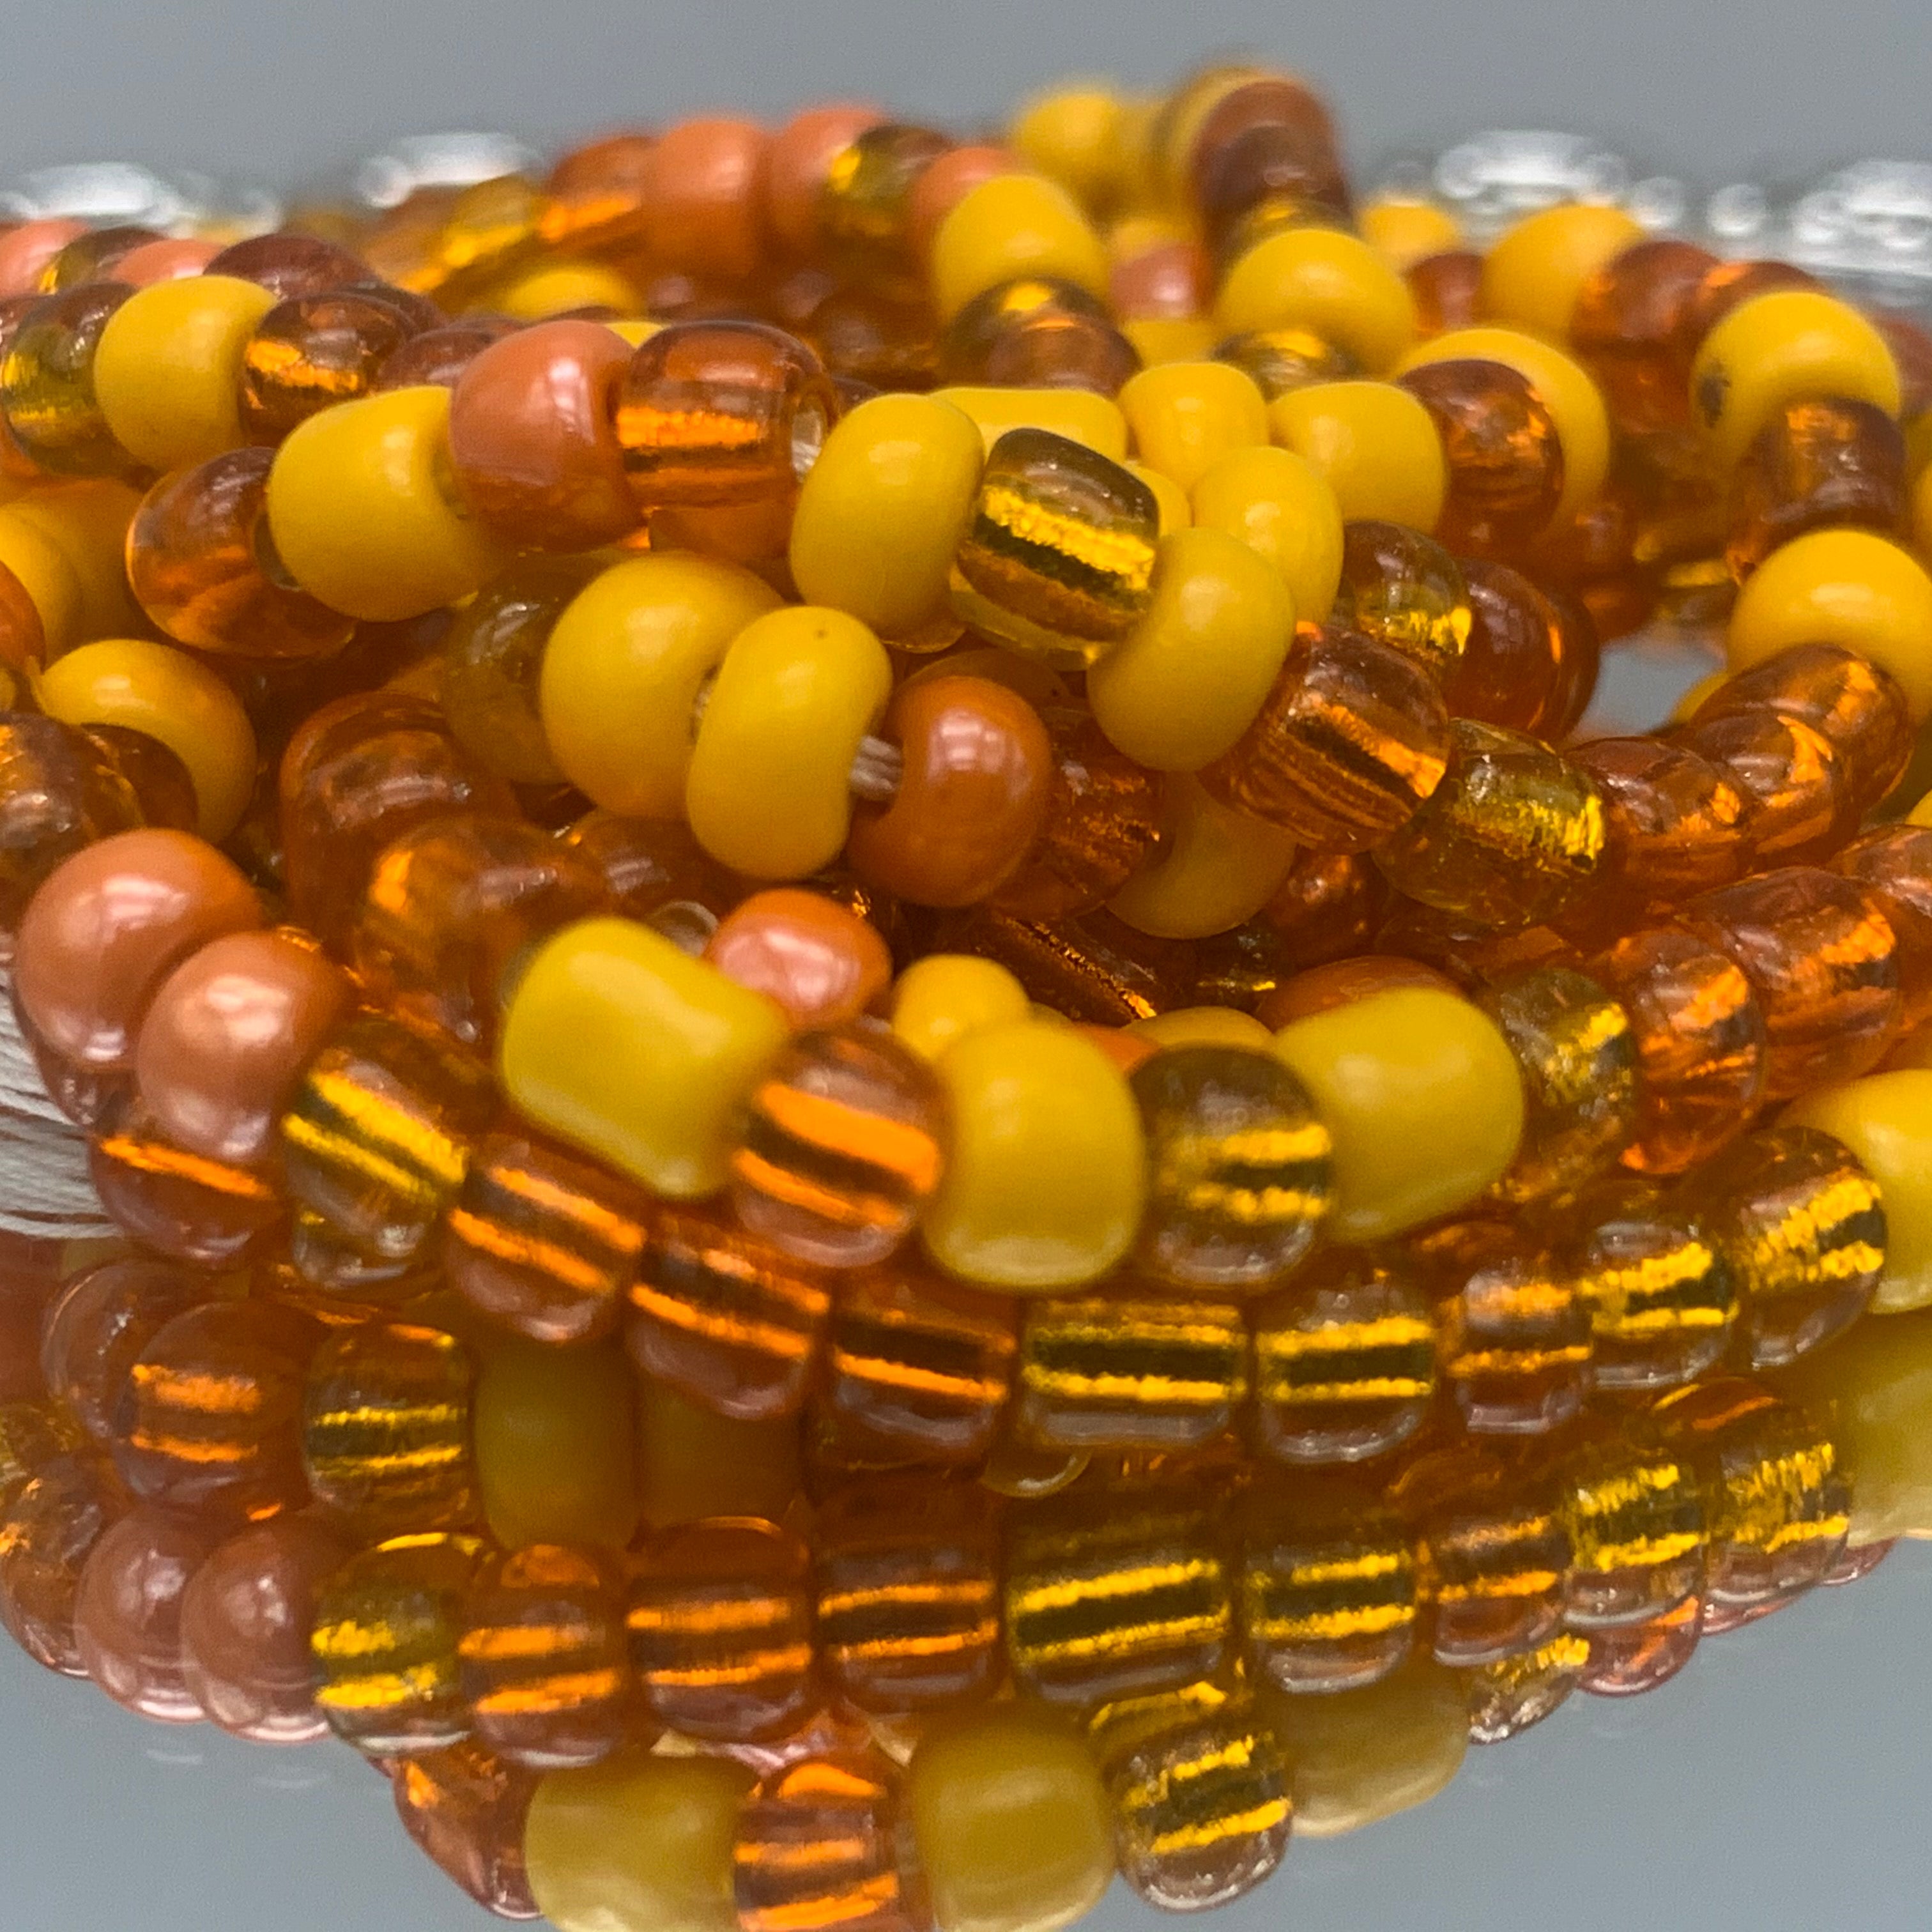 Yellow/Orange Waist Beads